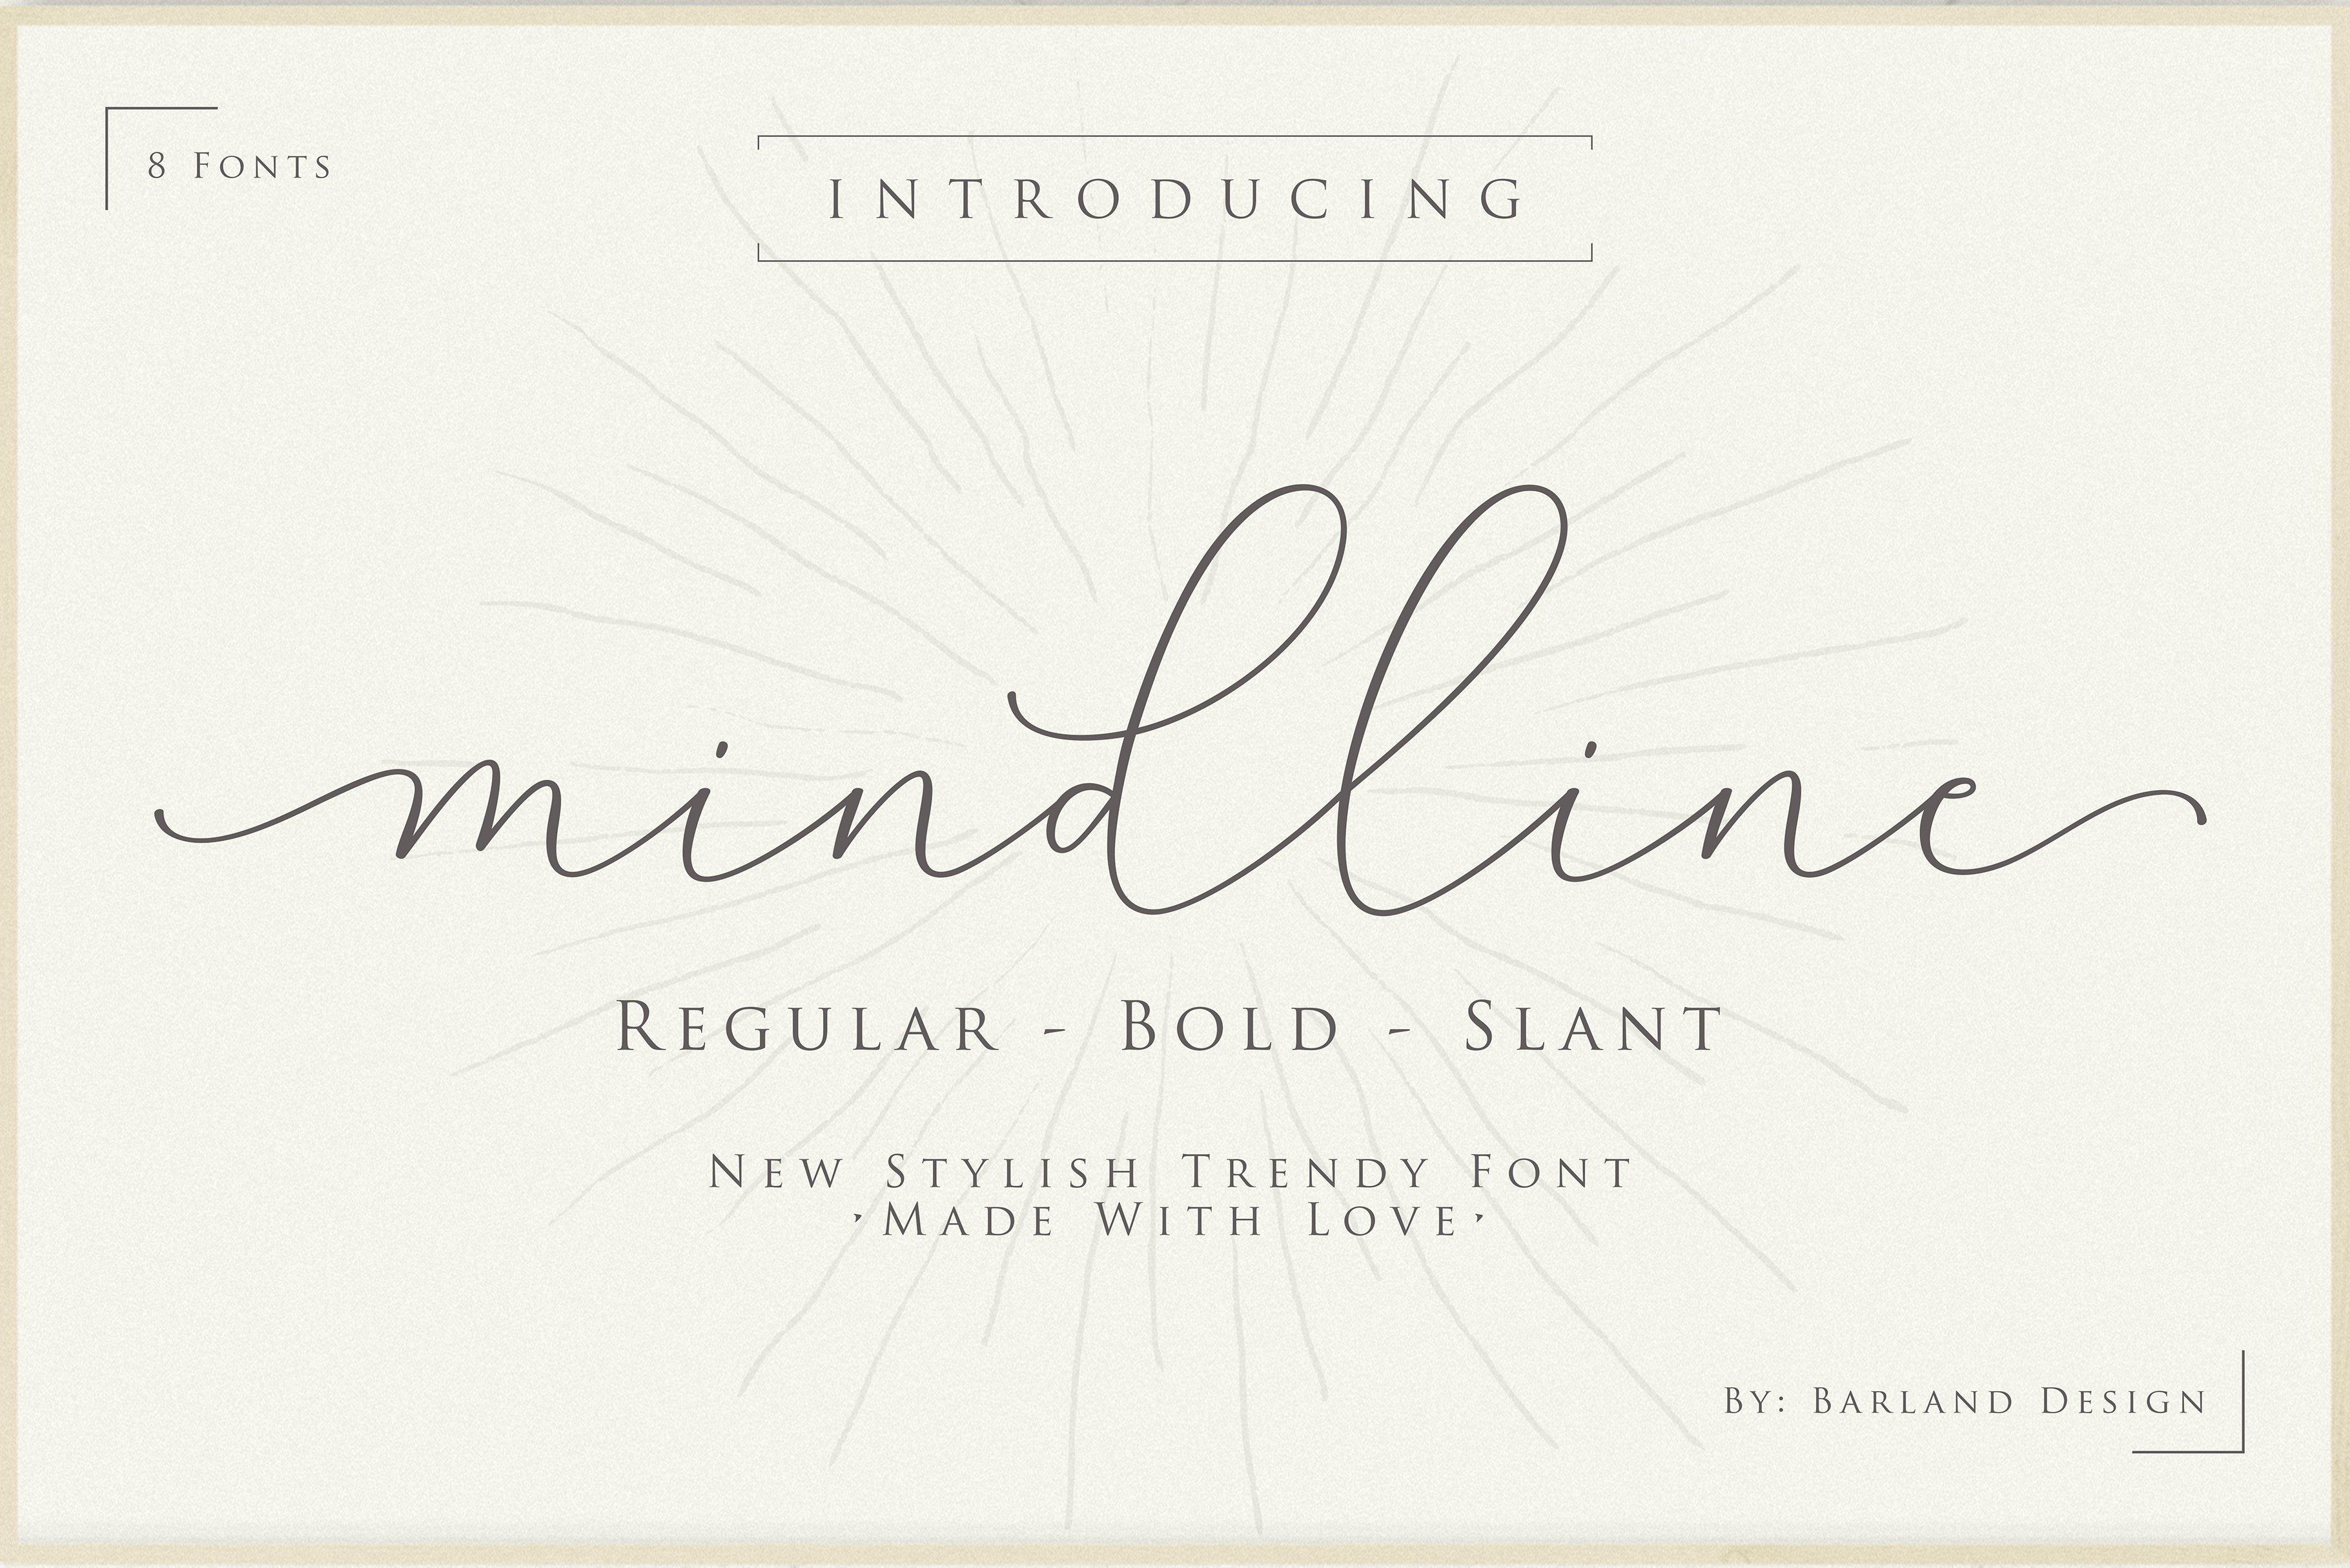 Mindline Script cover image.